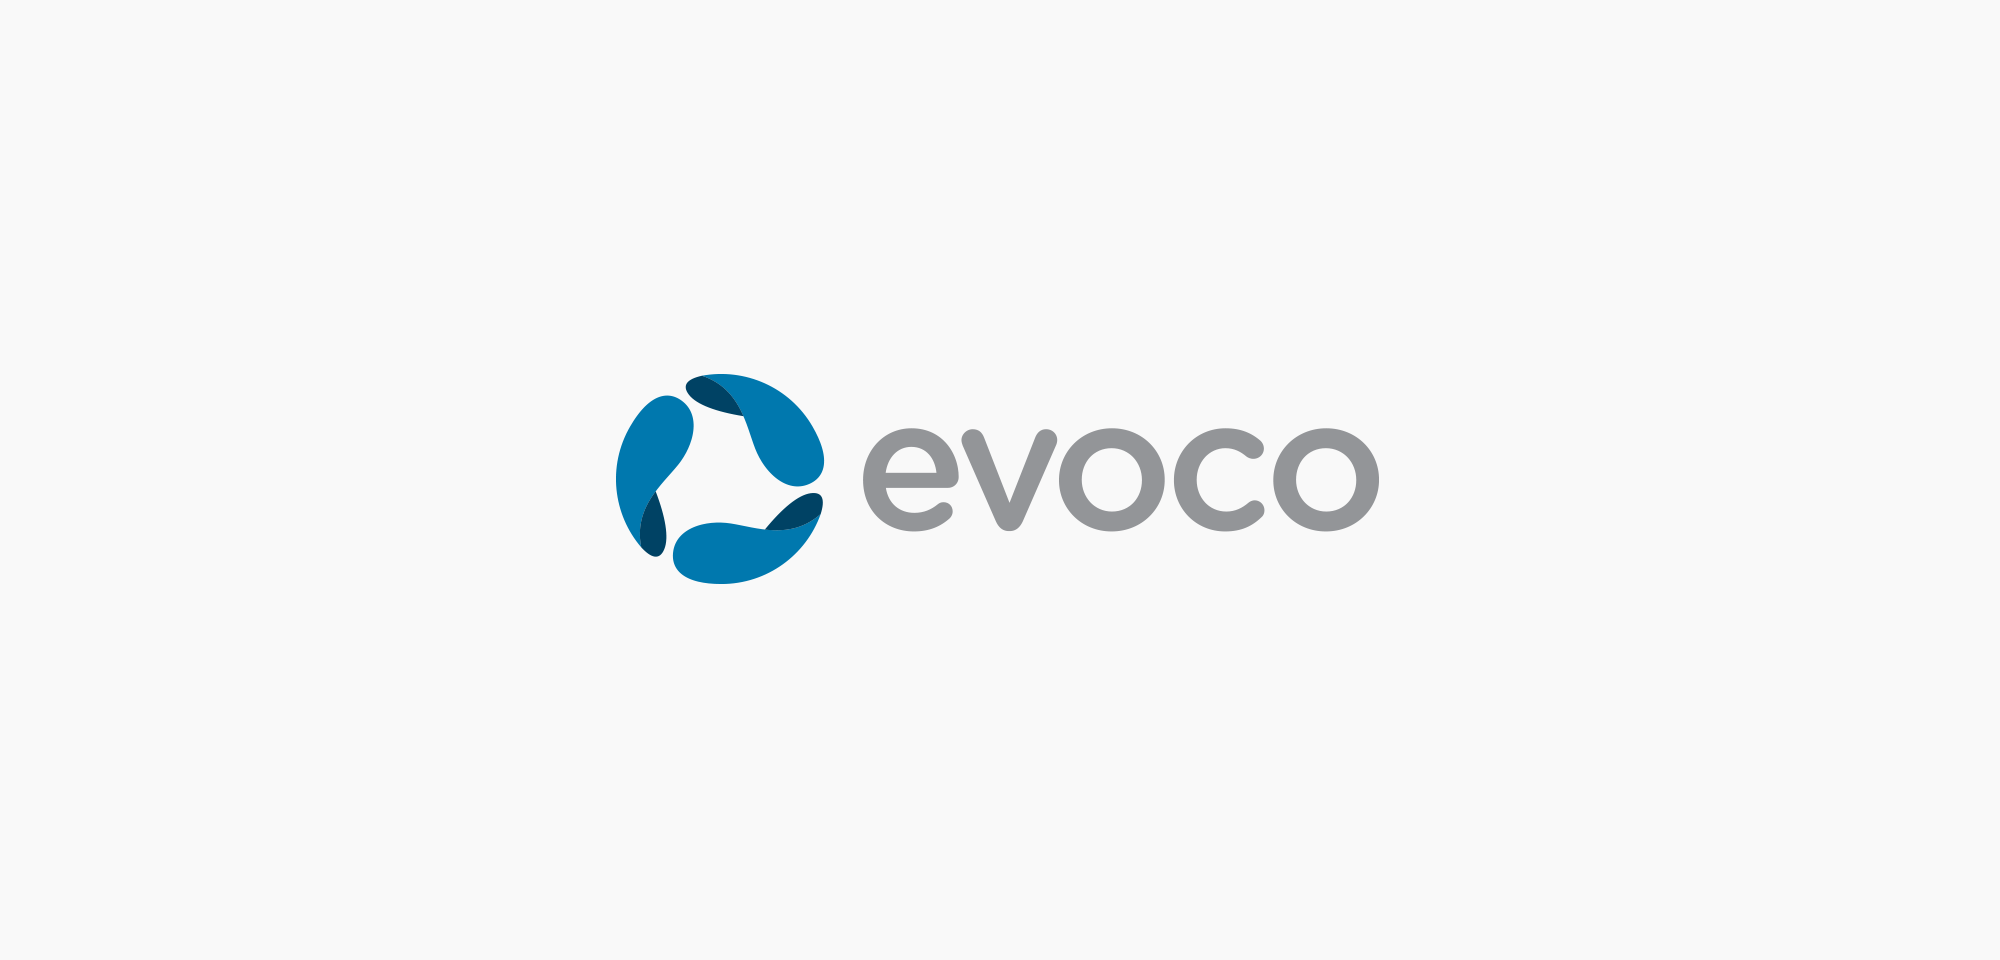 evoco_logo2